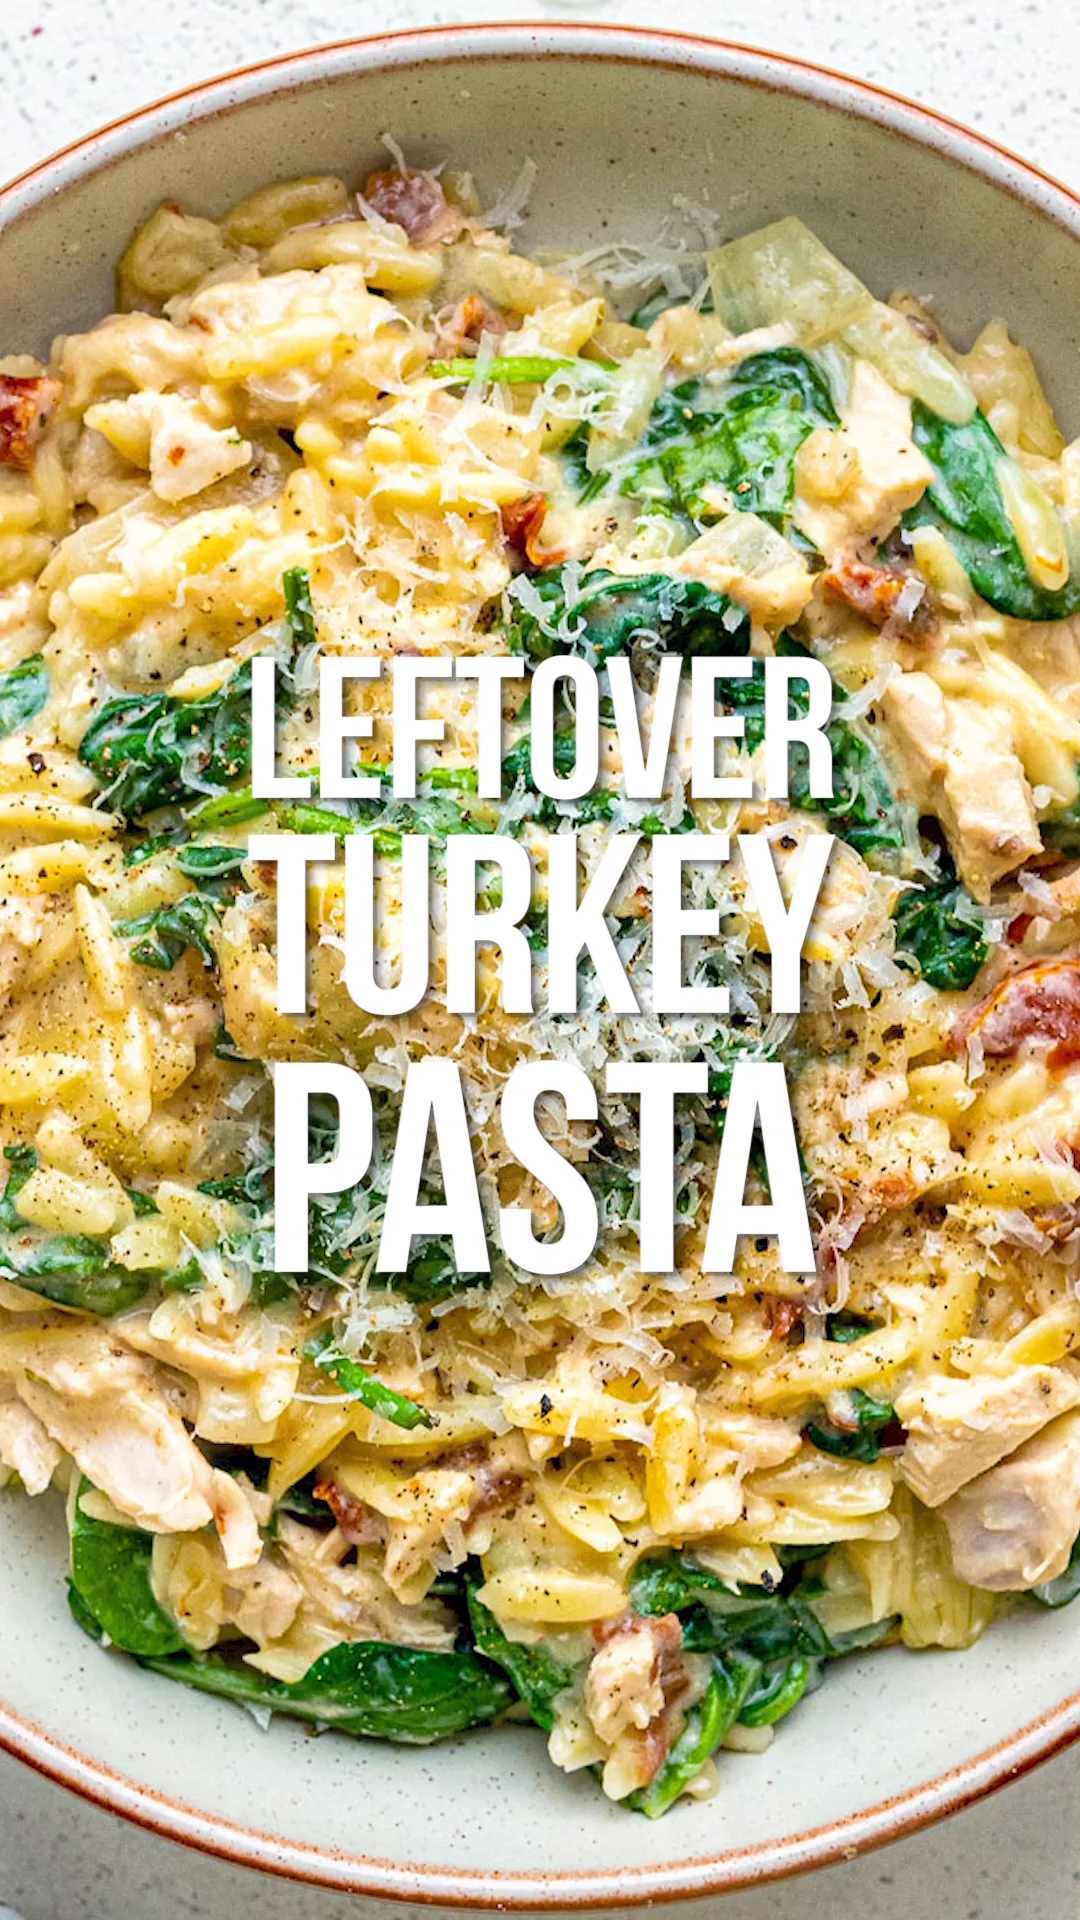 19 leftover turkey recipes easy ideas